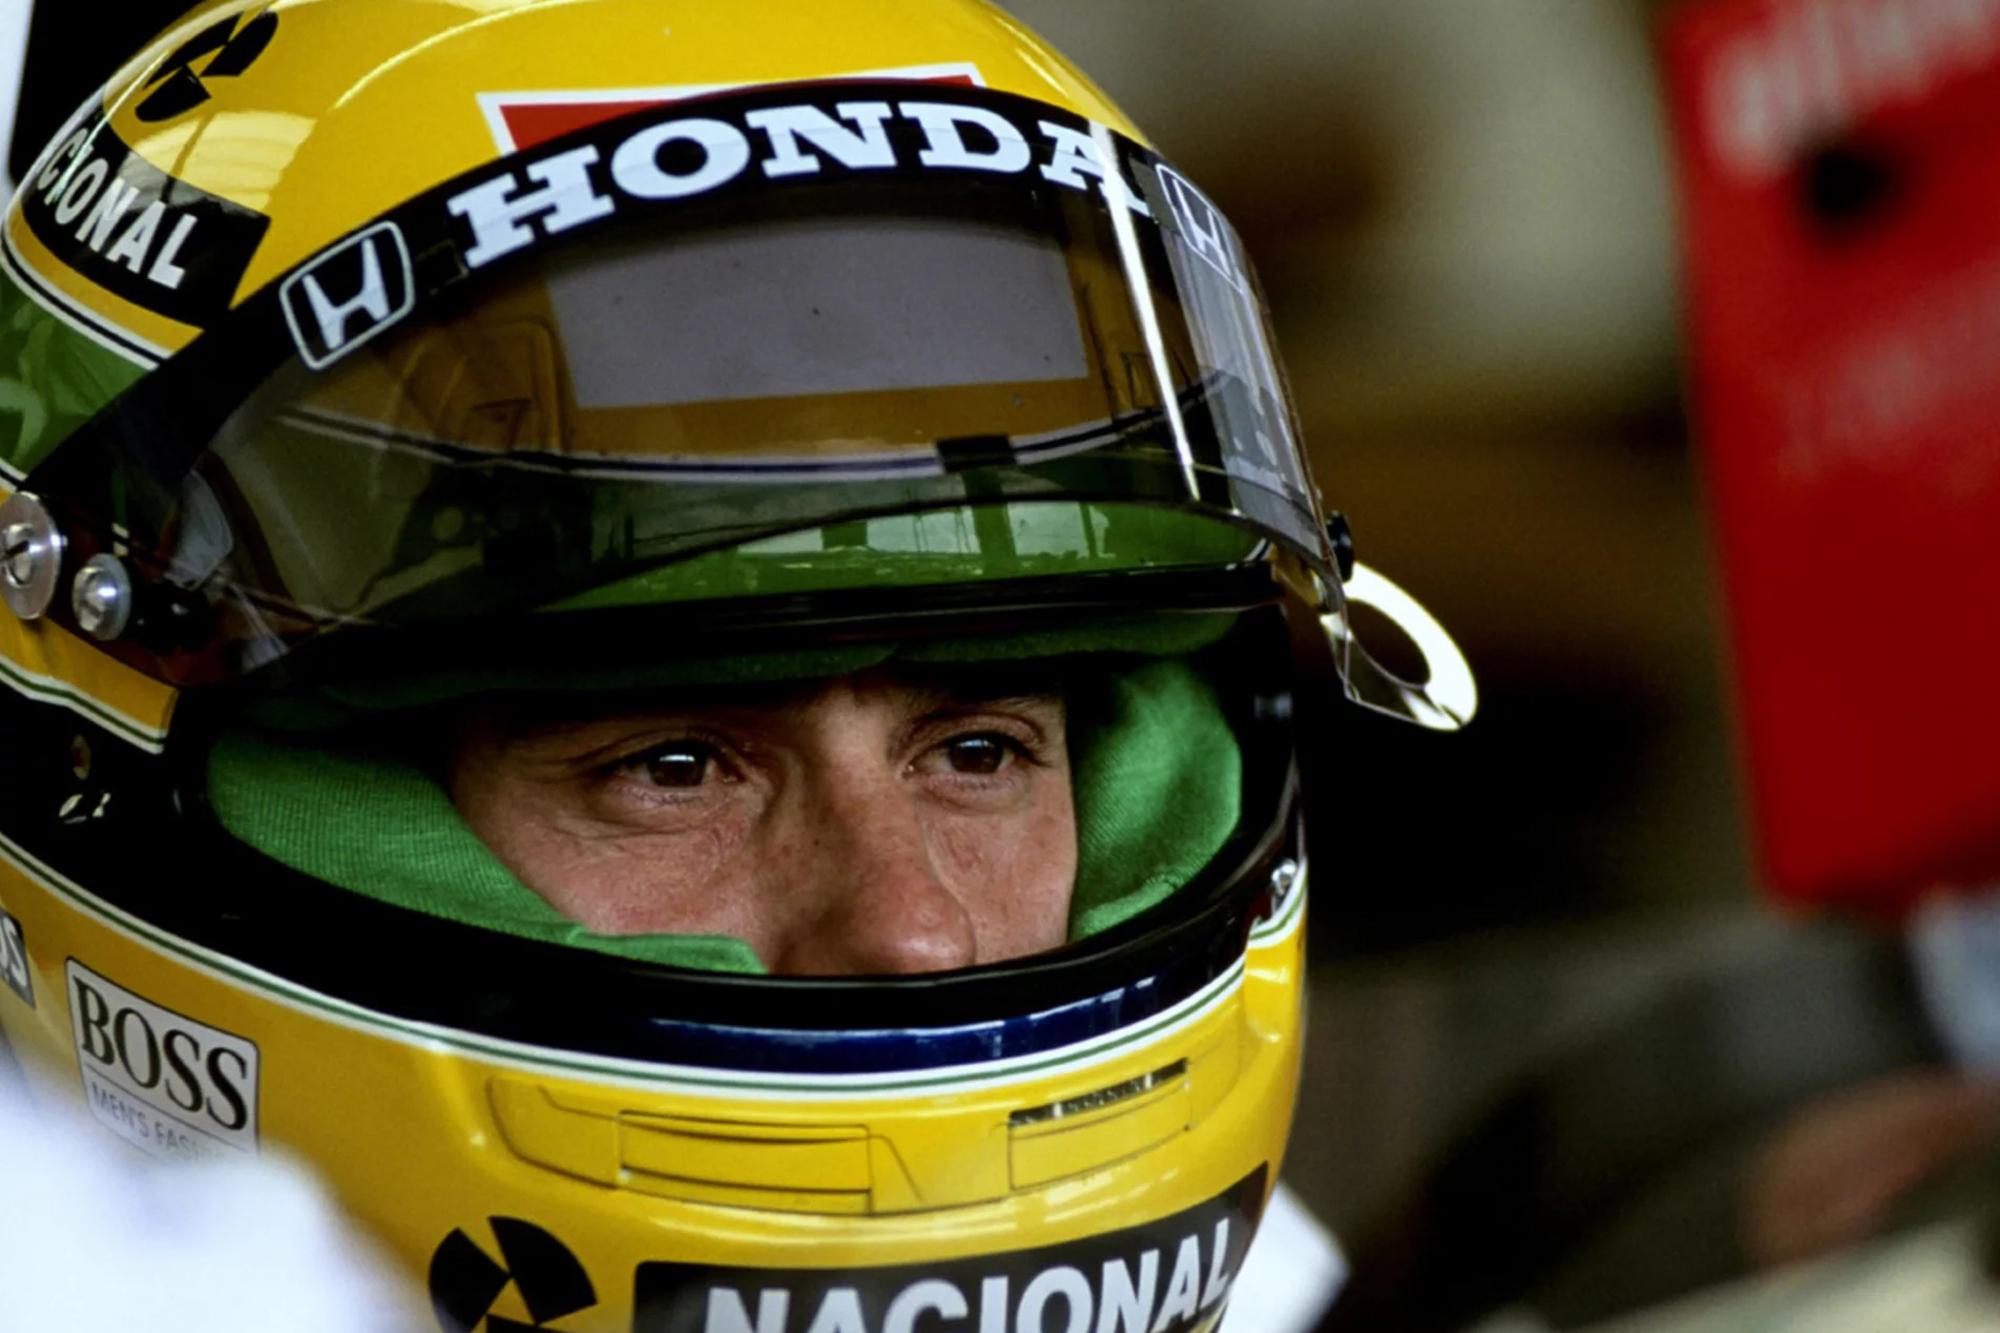 Θα μπορούσε ο Senna να οδηγήσει σημερινό μονοθέσιο;